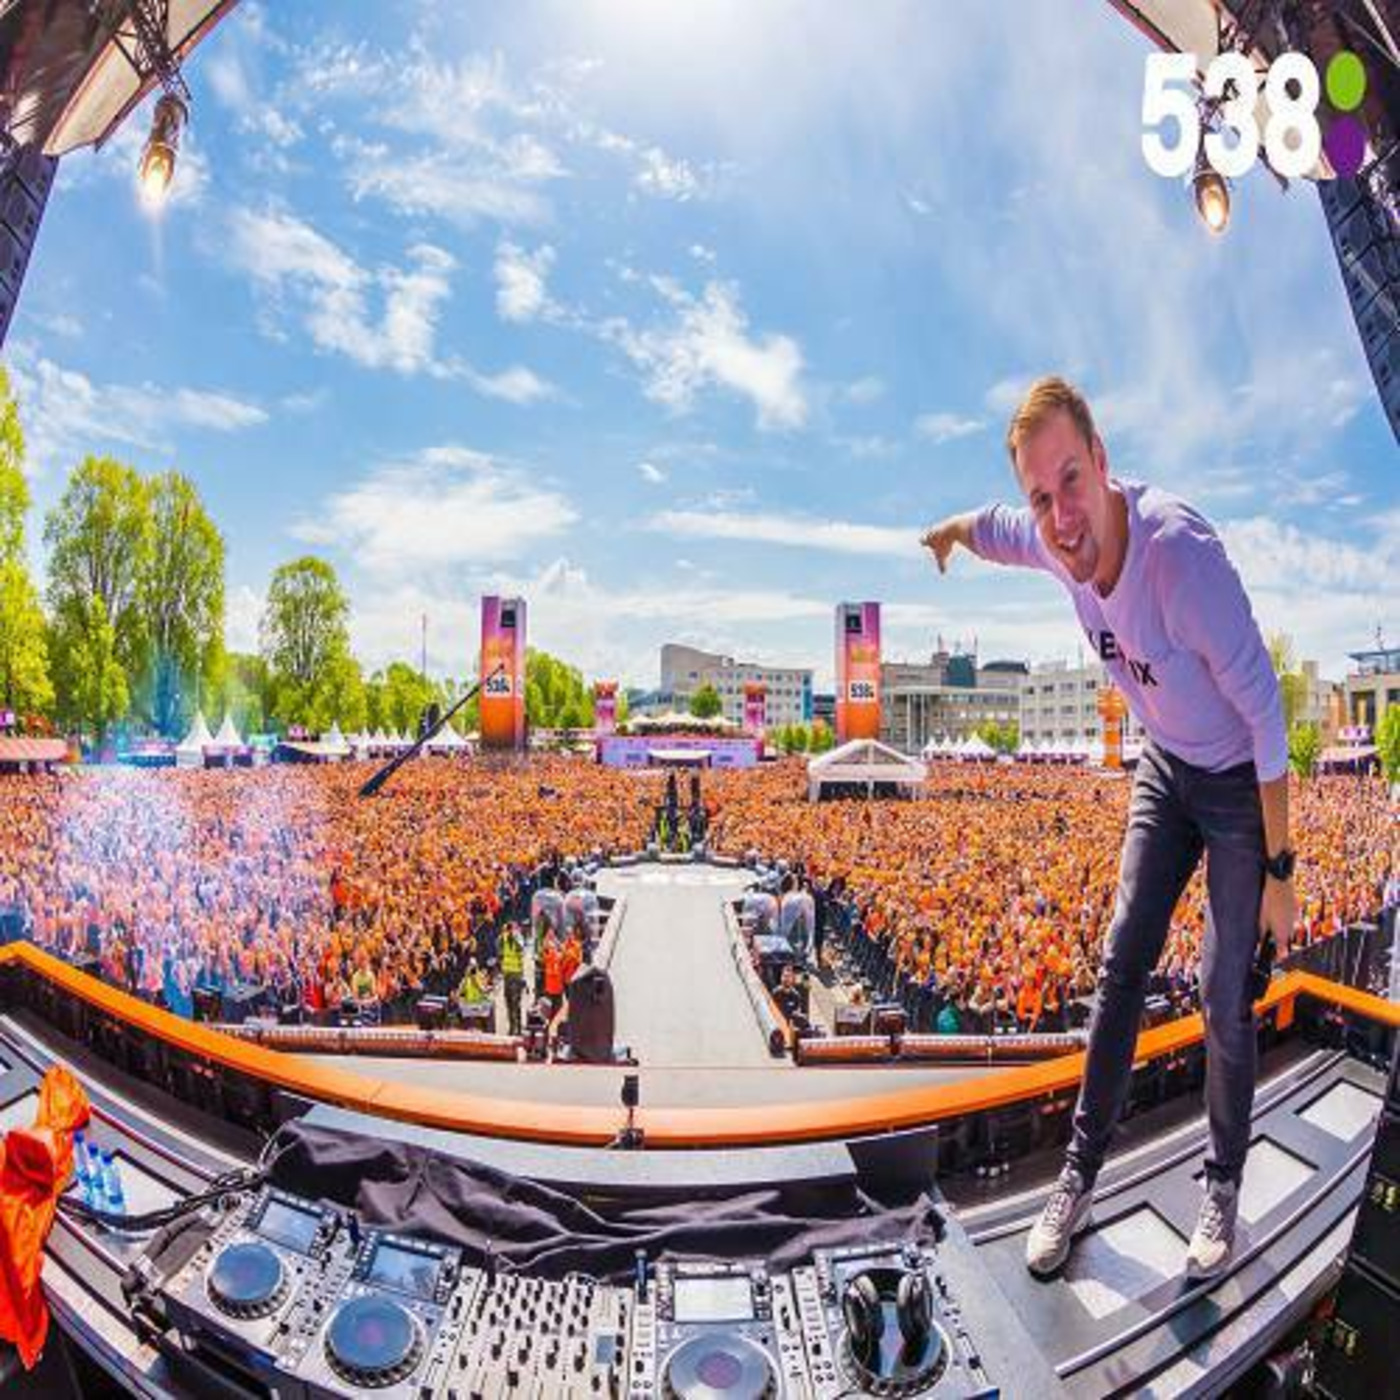 Armin van Buuren - Live @ Koningsdag Netherlands (27.04.2018)